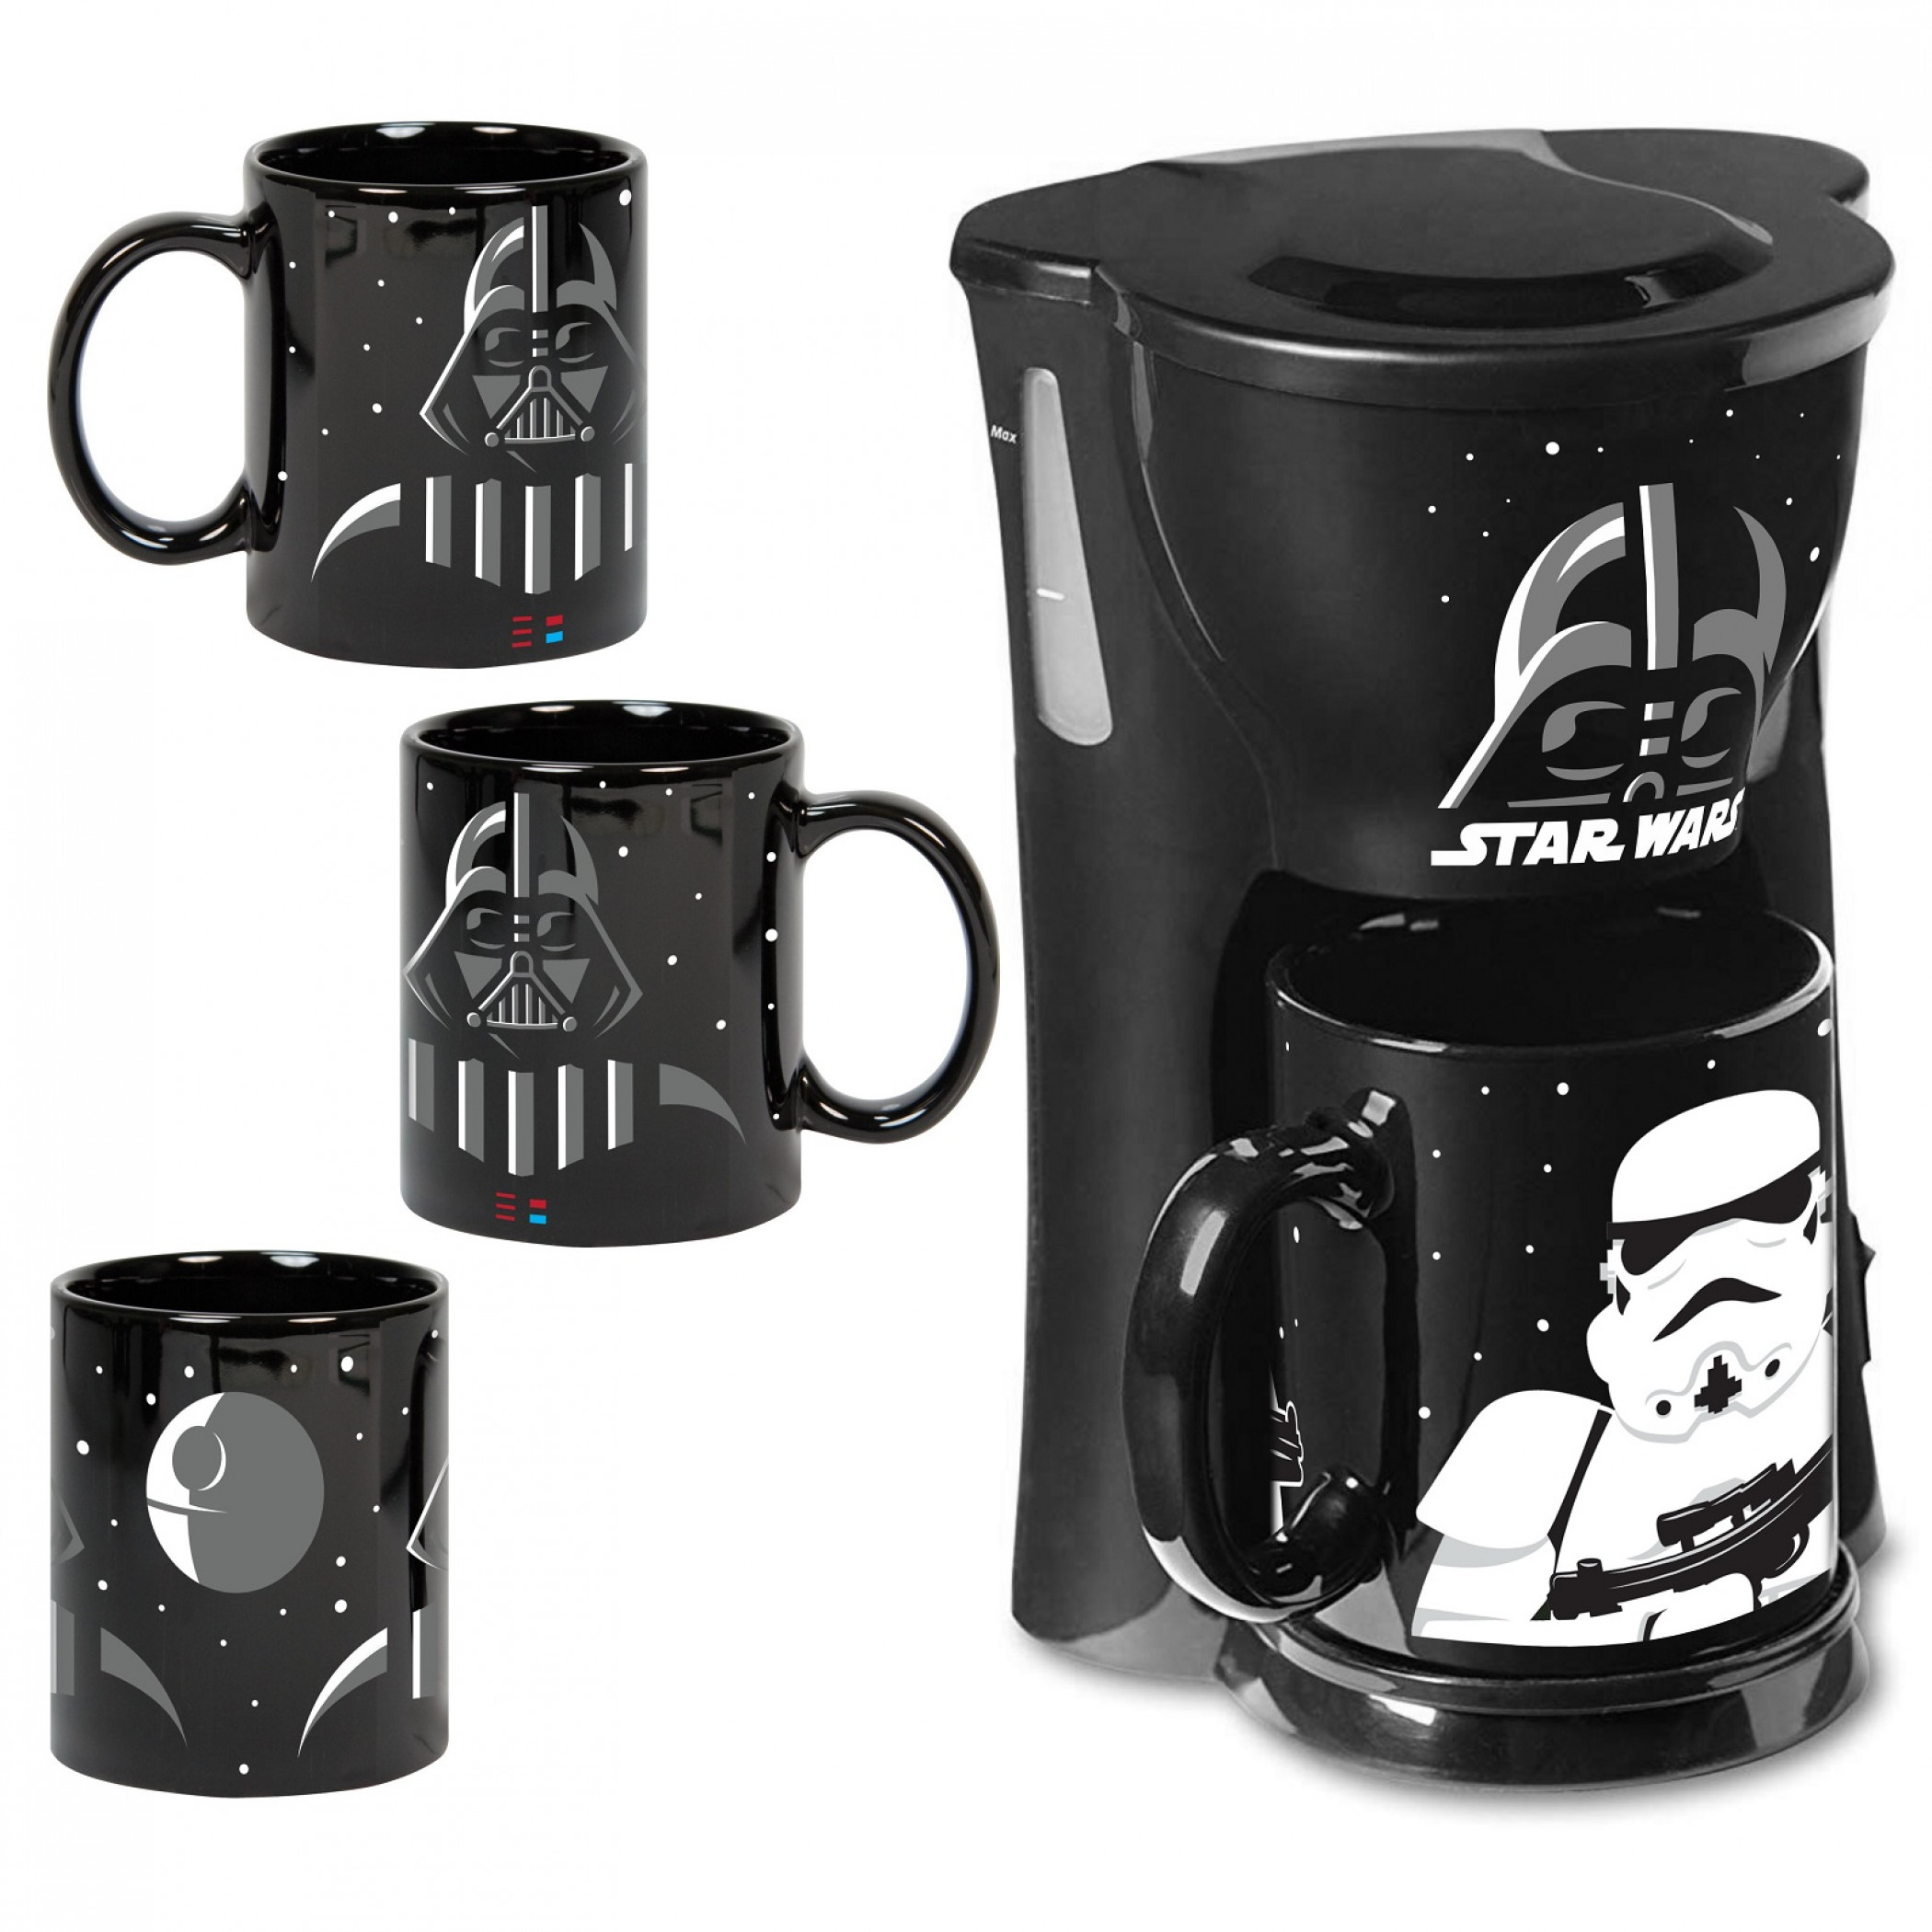 Luke Skywalker Darth Vader Lot Boba Fett Hans Solo 2 star wars coffee mugs 